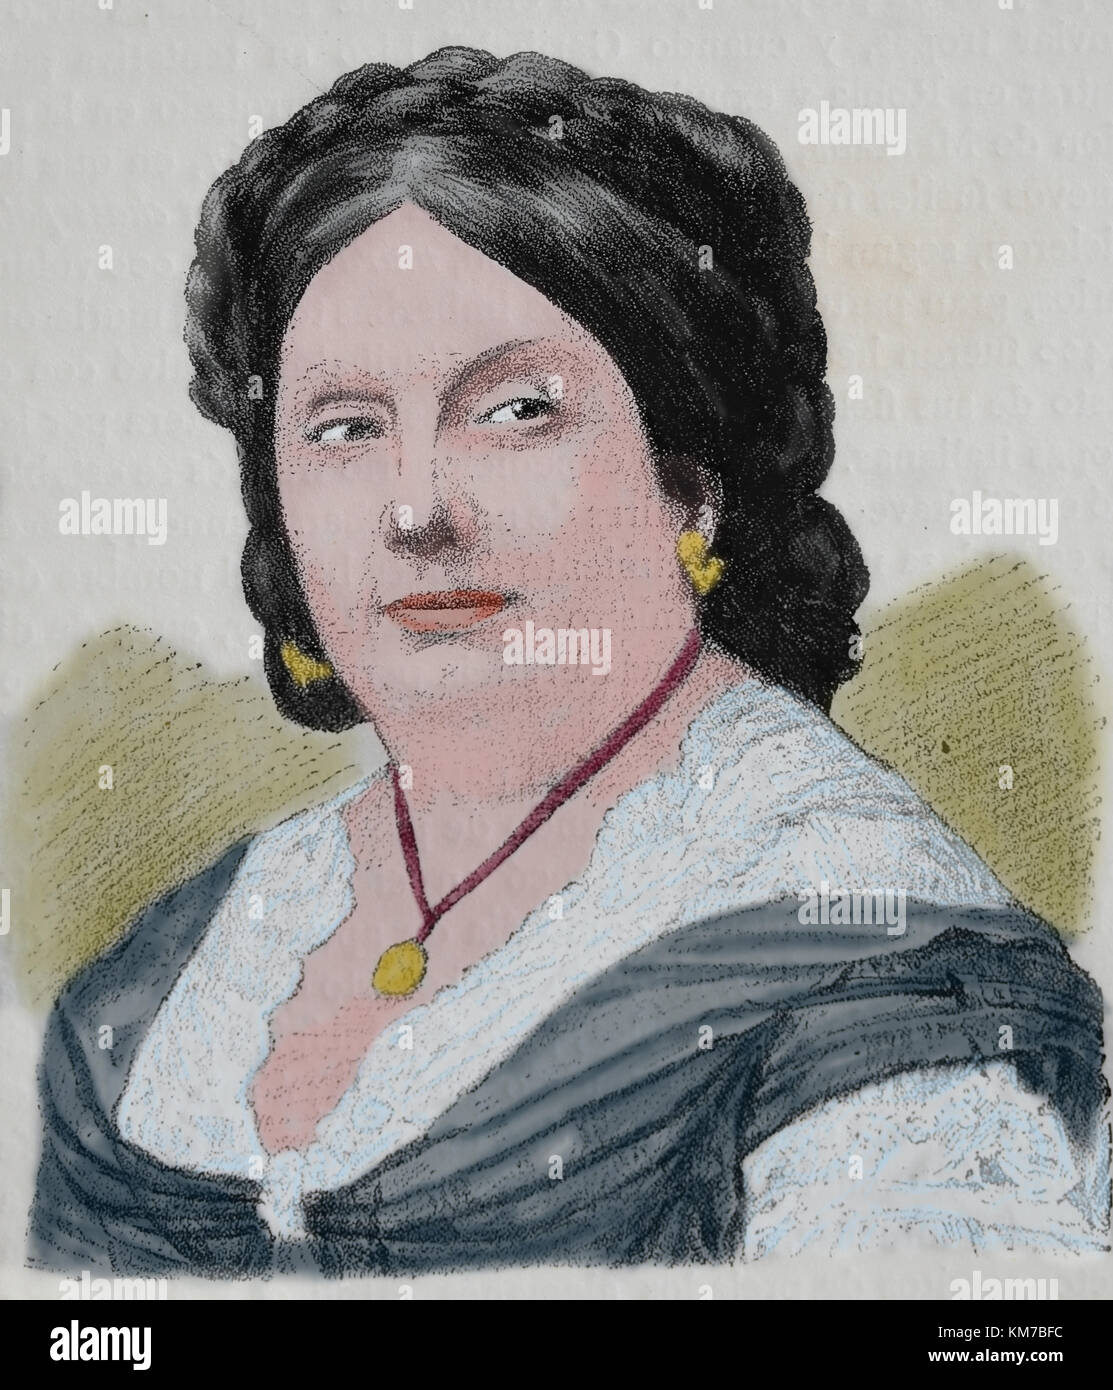 Isabella II. von Spanien (1830-1904) Königin von Spanien von 1833-1868. Gravieren, 1883. Stockfoto